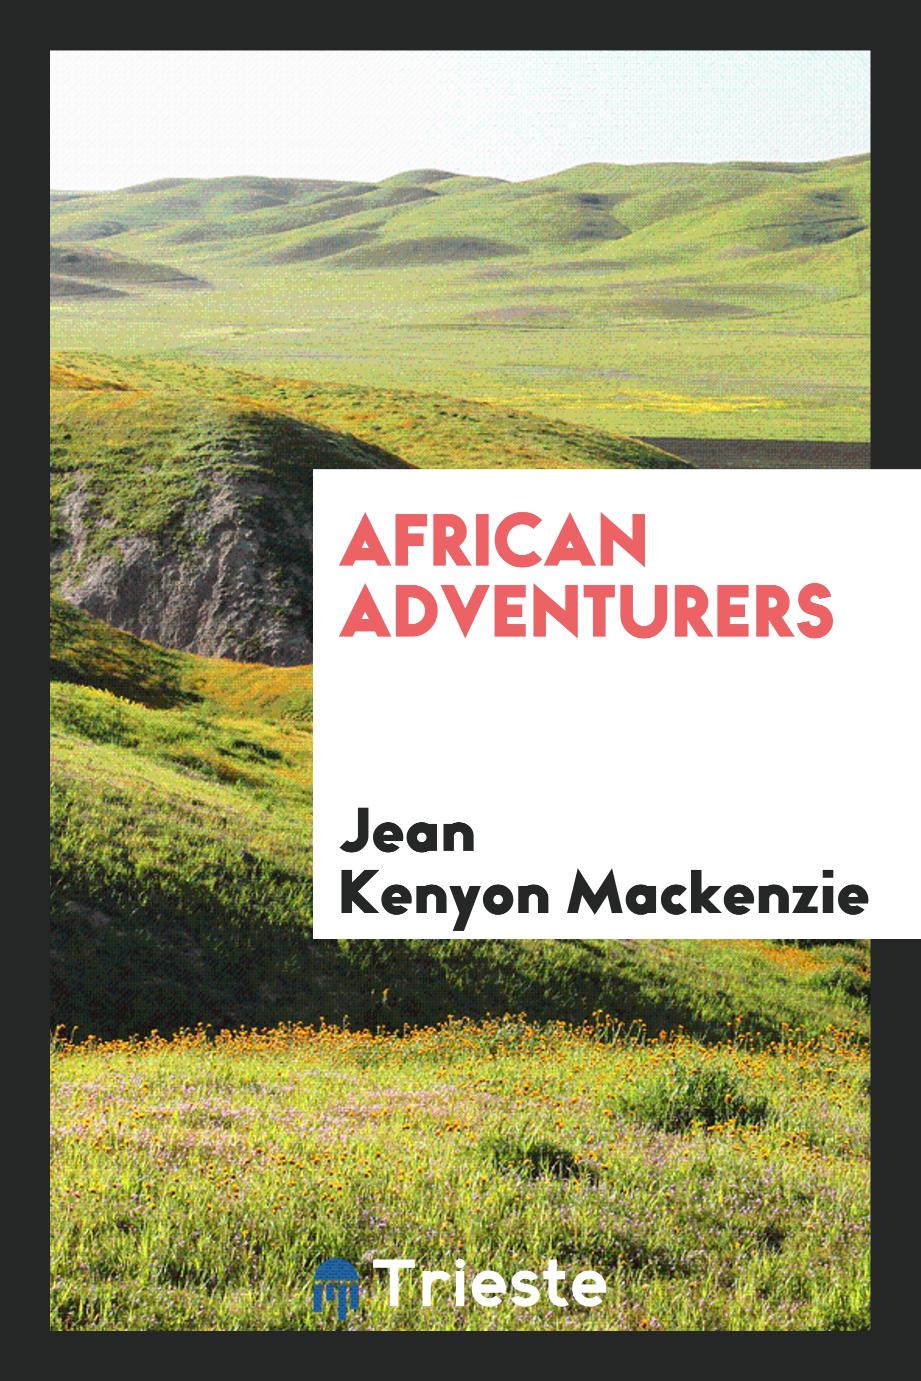 African adventurers